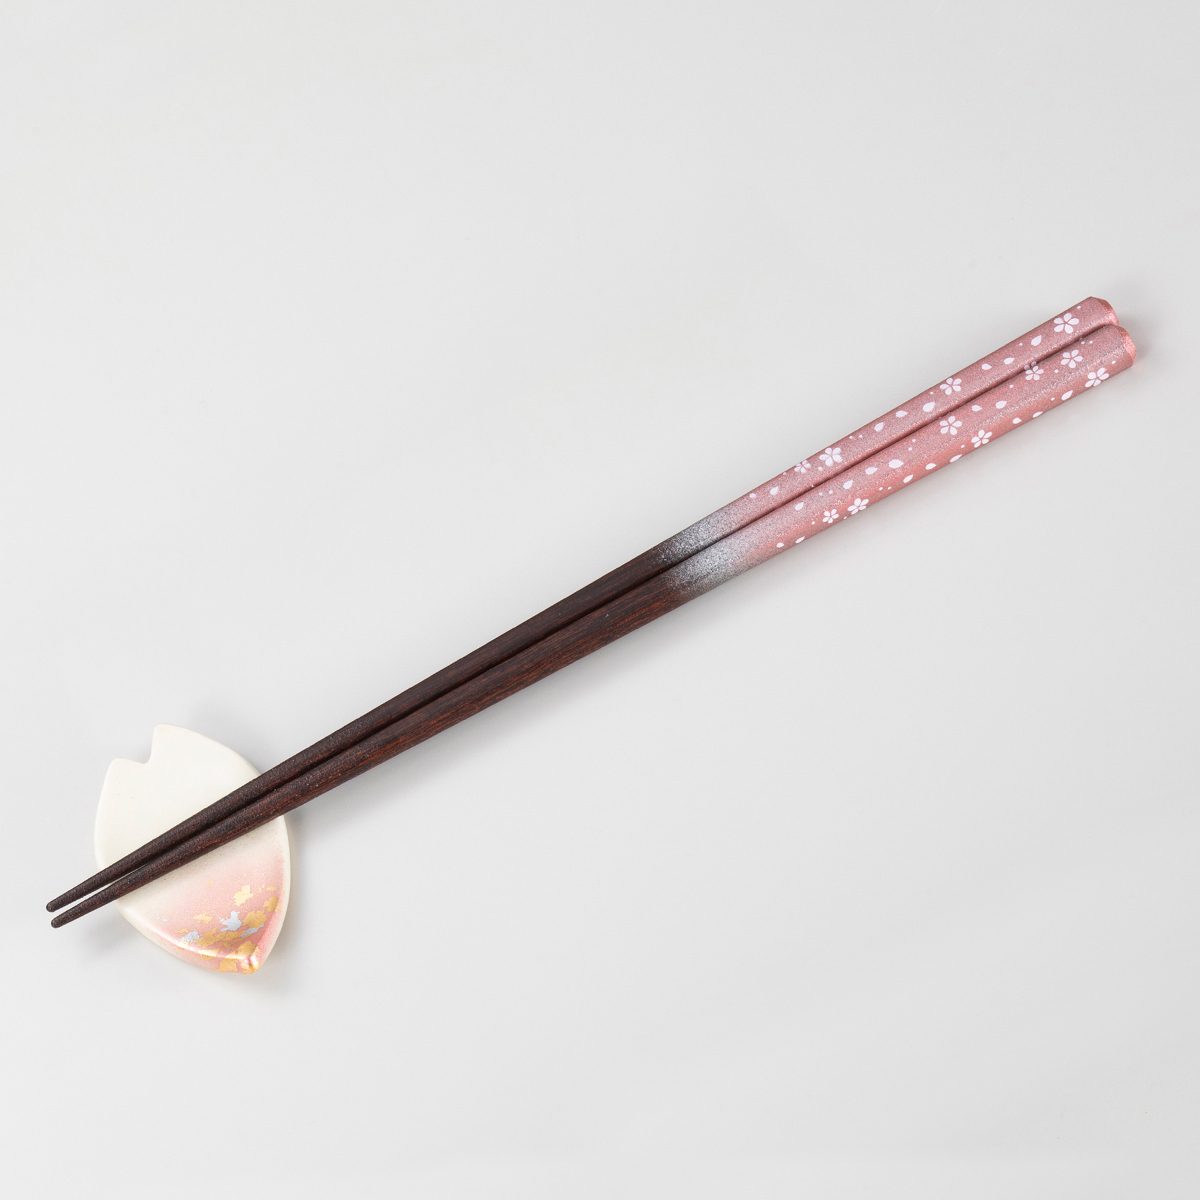 箸・箸置きセット 桜 <桜色> - 金沢金箔の箔一オンラインショップ| HAKUICHI STYLE